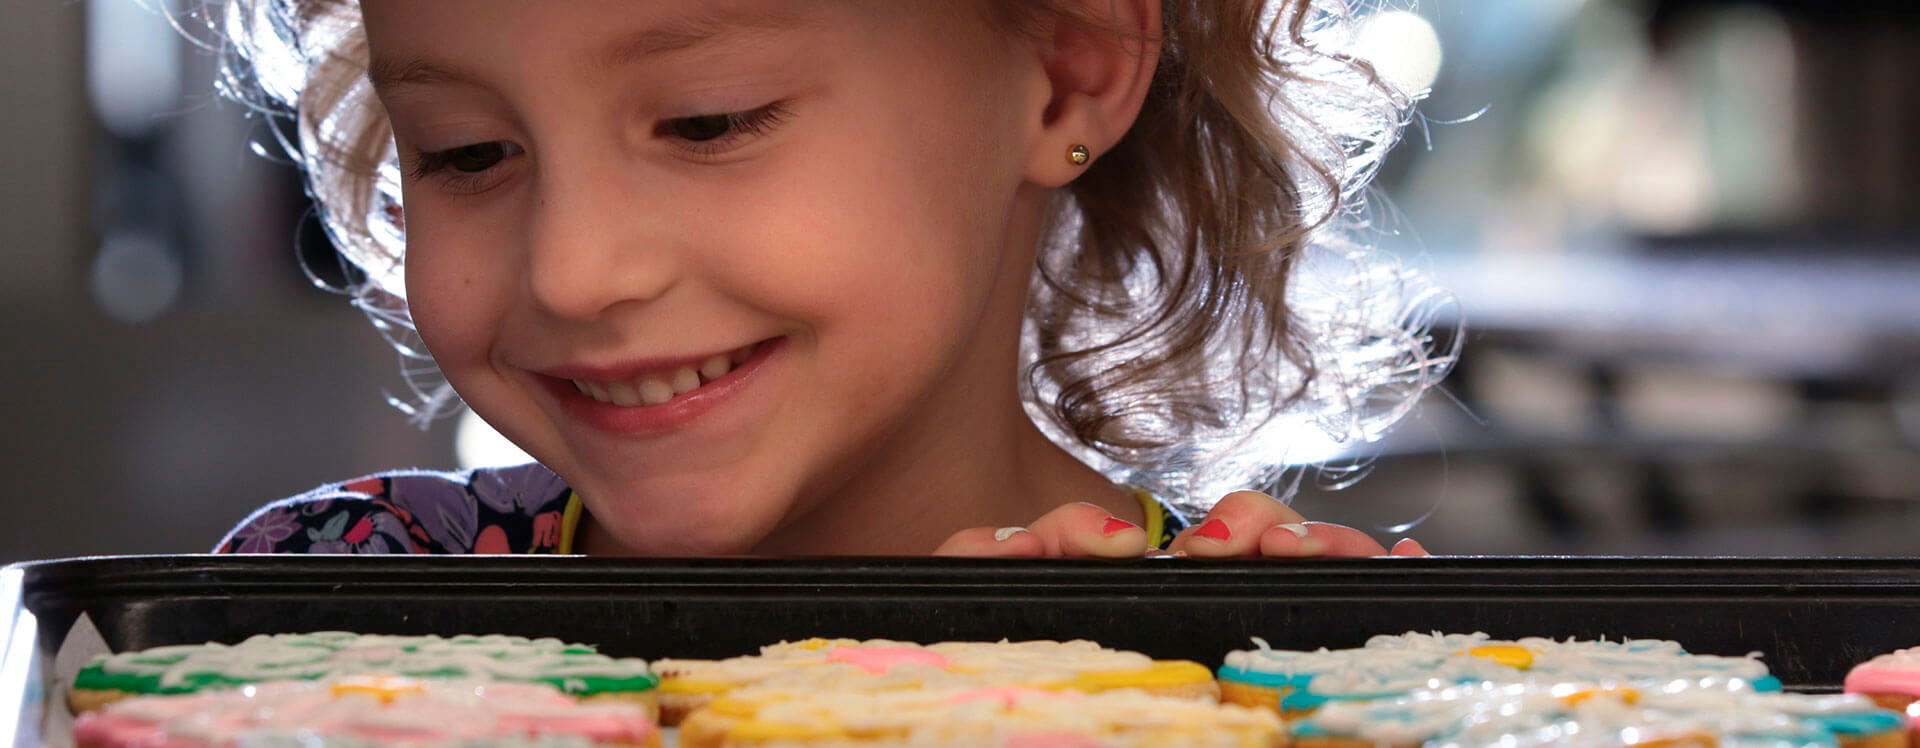 Girl looking at cookies